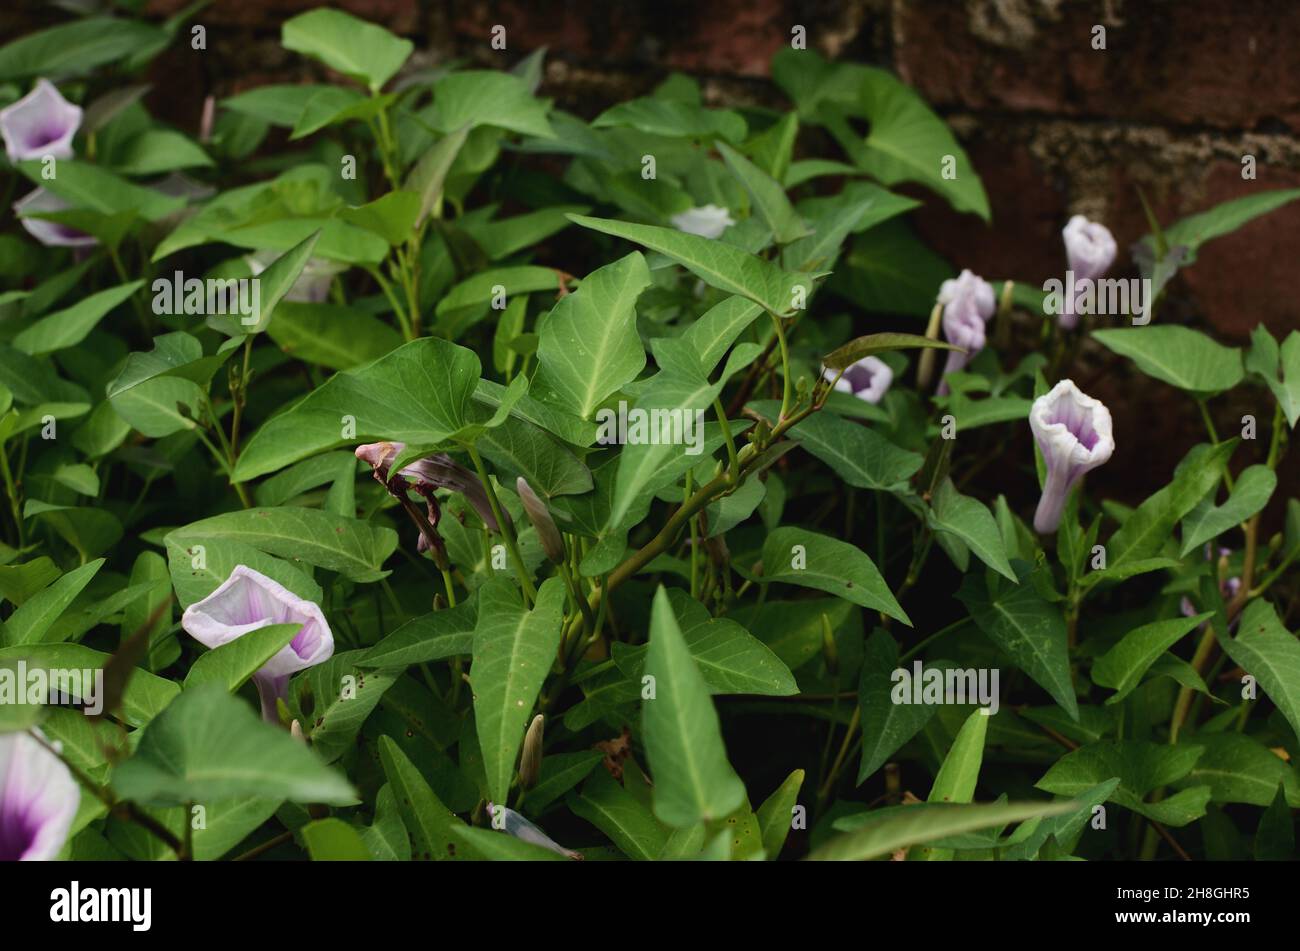 Green Fresh Water Spinach, Hygrophila auriculata,  Ridge Gourd flower Stock Photo